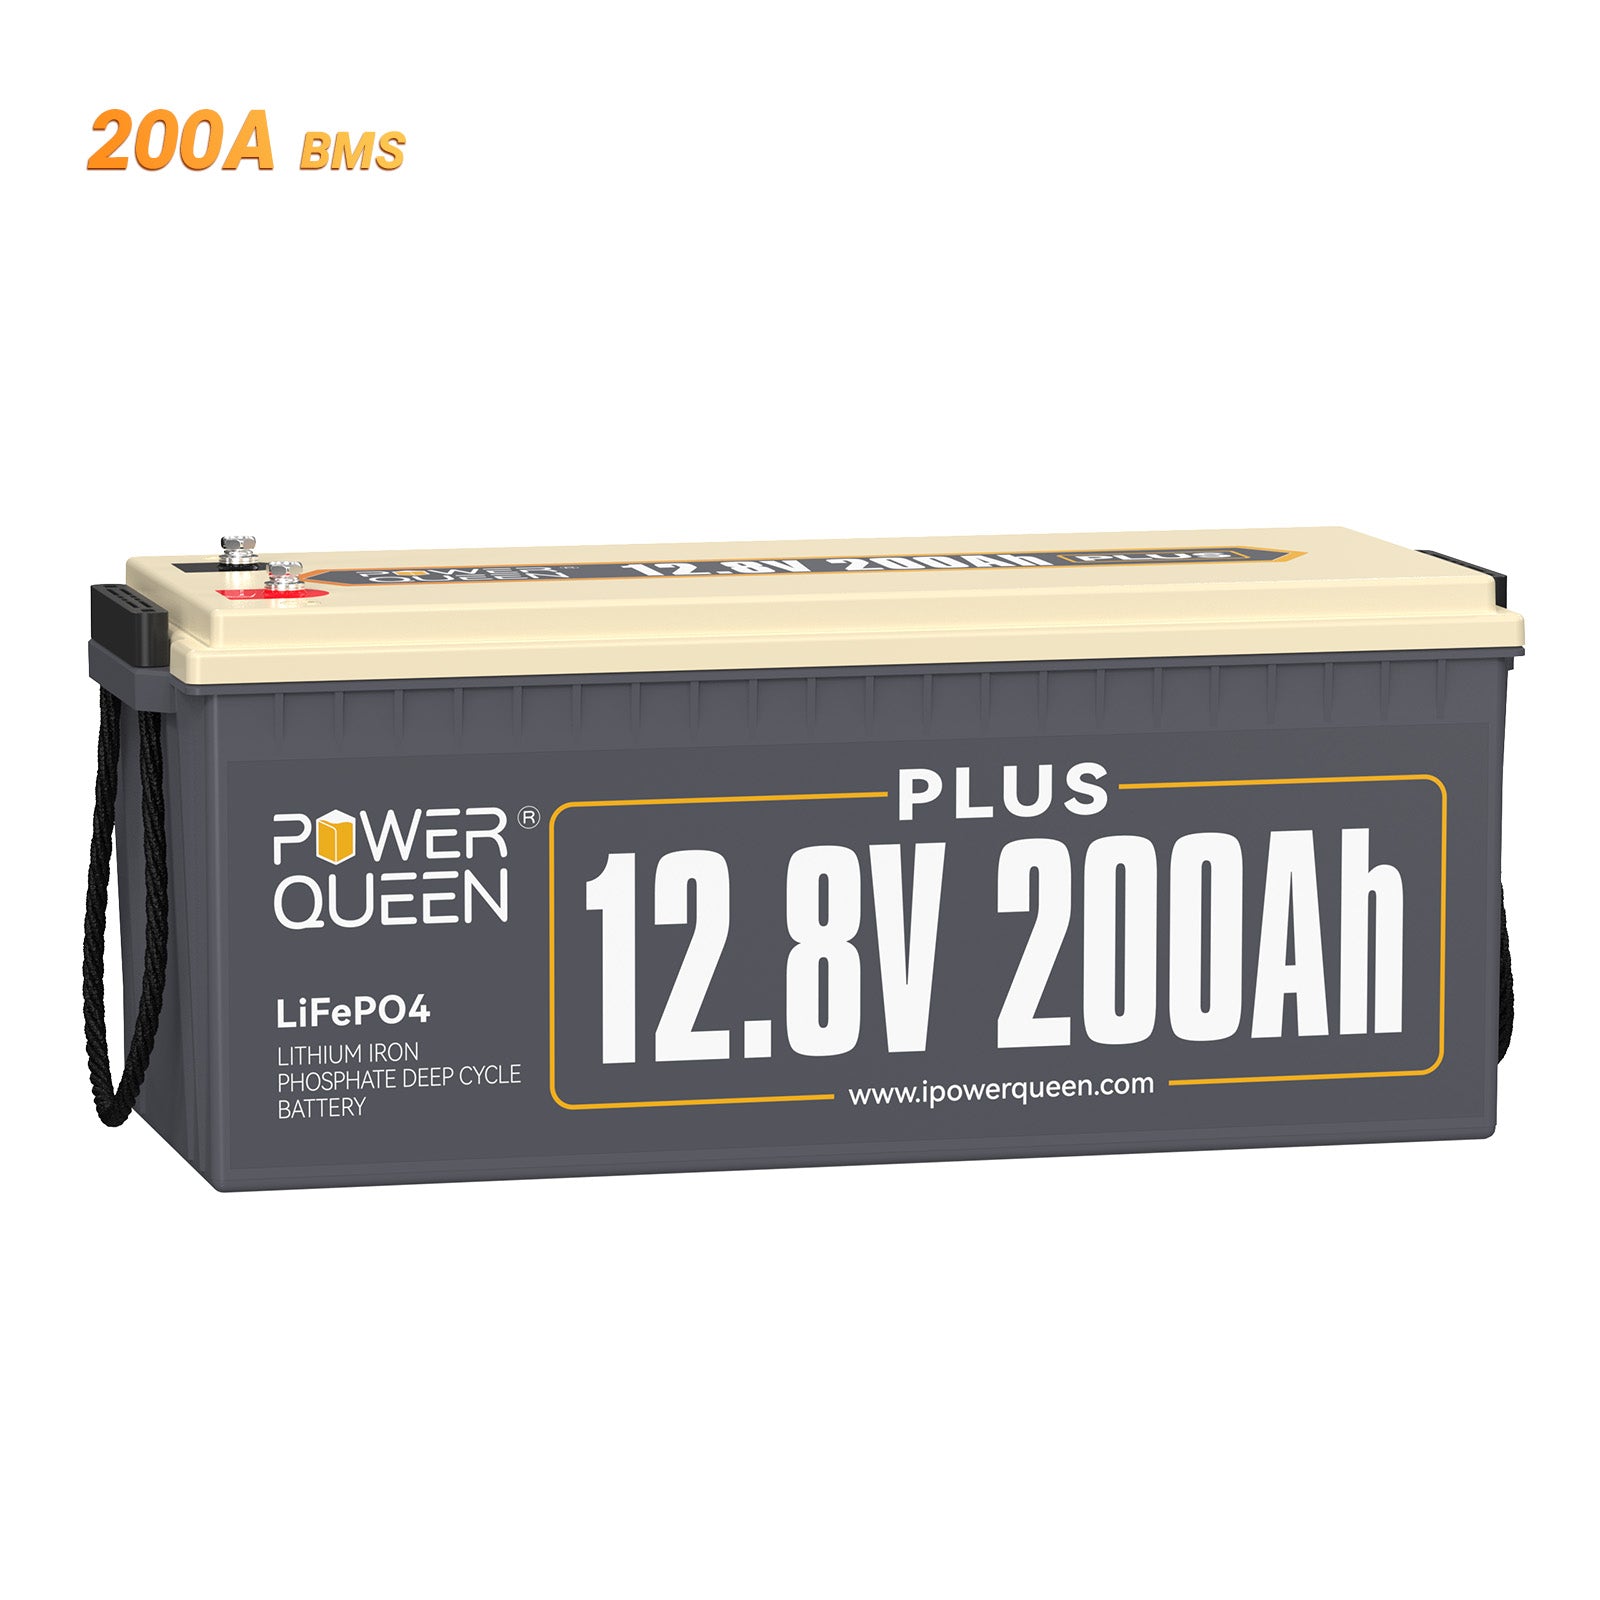 Batería Power Queen de 12,8 V, 200 Ah más LiFePO4, BMS integrado de 200 A